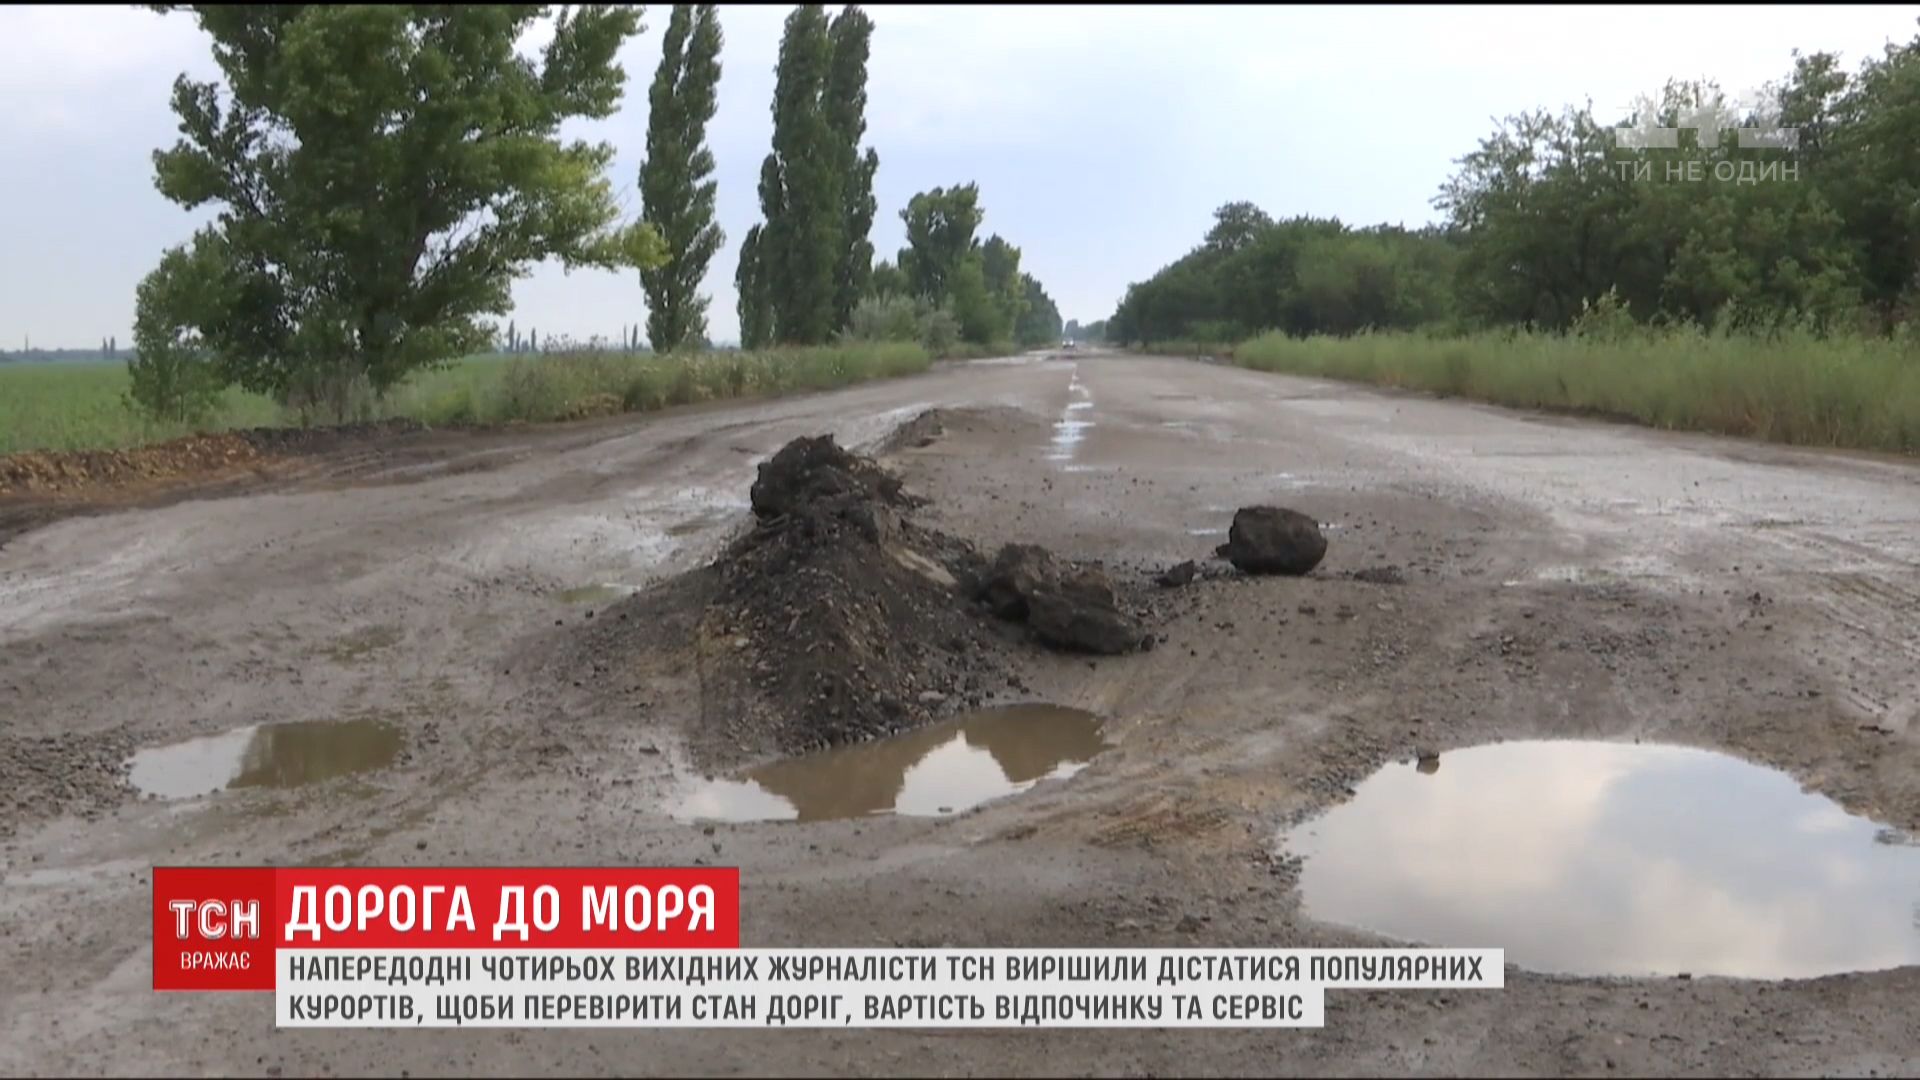 Часом мені здавалося, що ми вже не поїдемо з чергової ями, - розповіла журналістка про проїзд через Миколаївську область